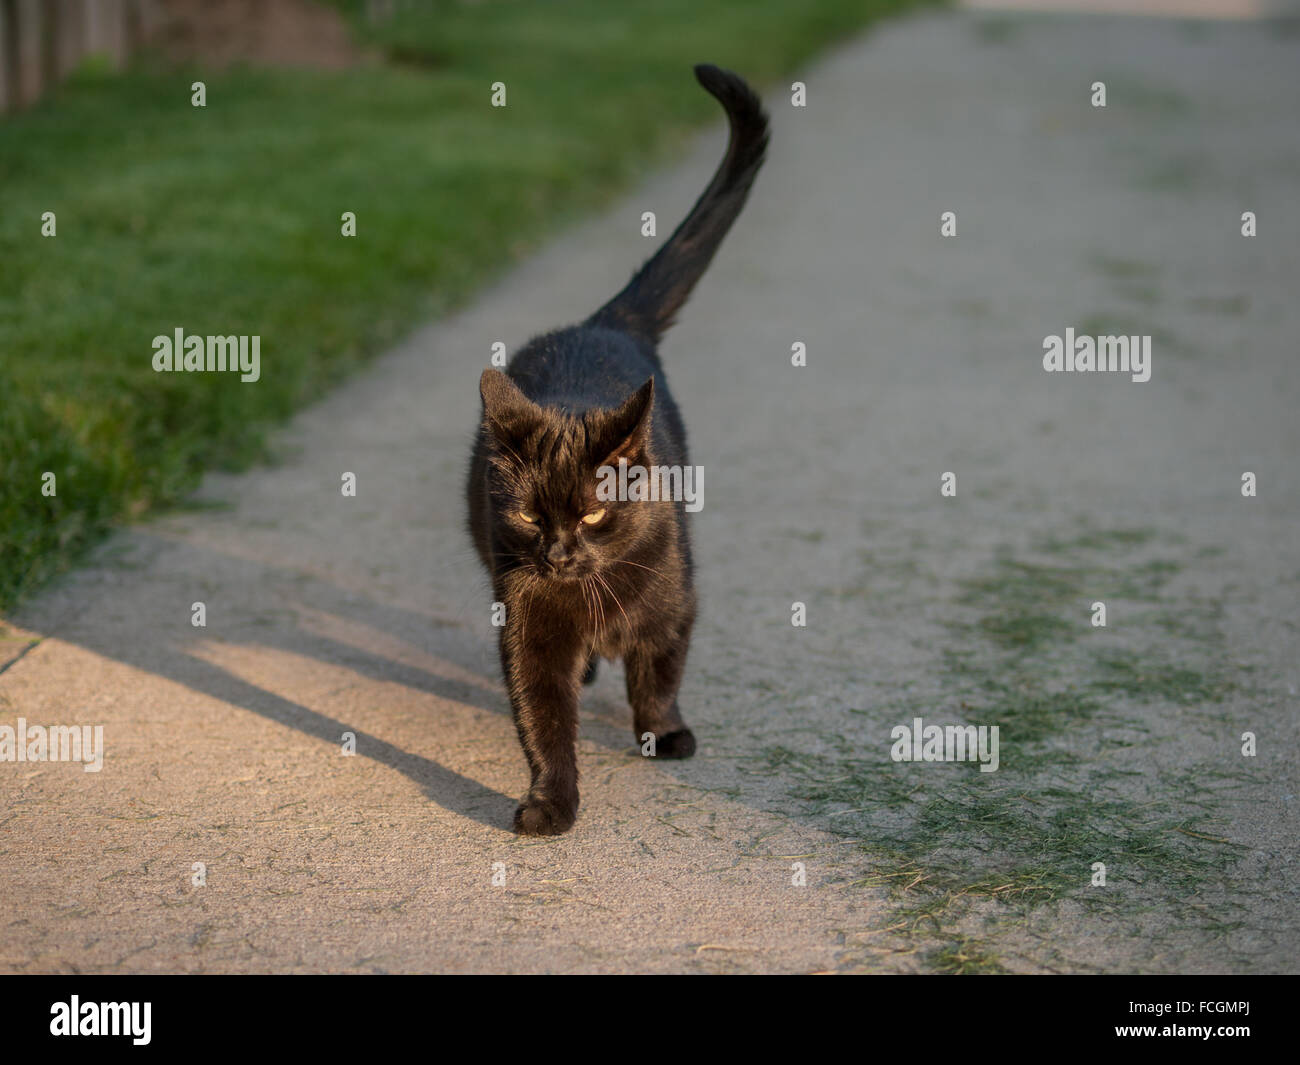 Gato negro caminar sobre la acera cubierto de hierba cortada, y mirando intensamente en la cámara. Foto de stock